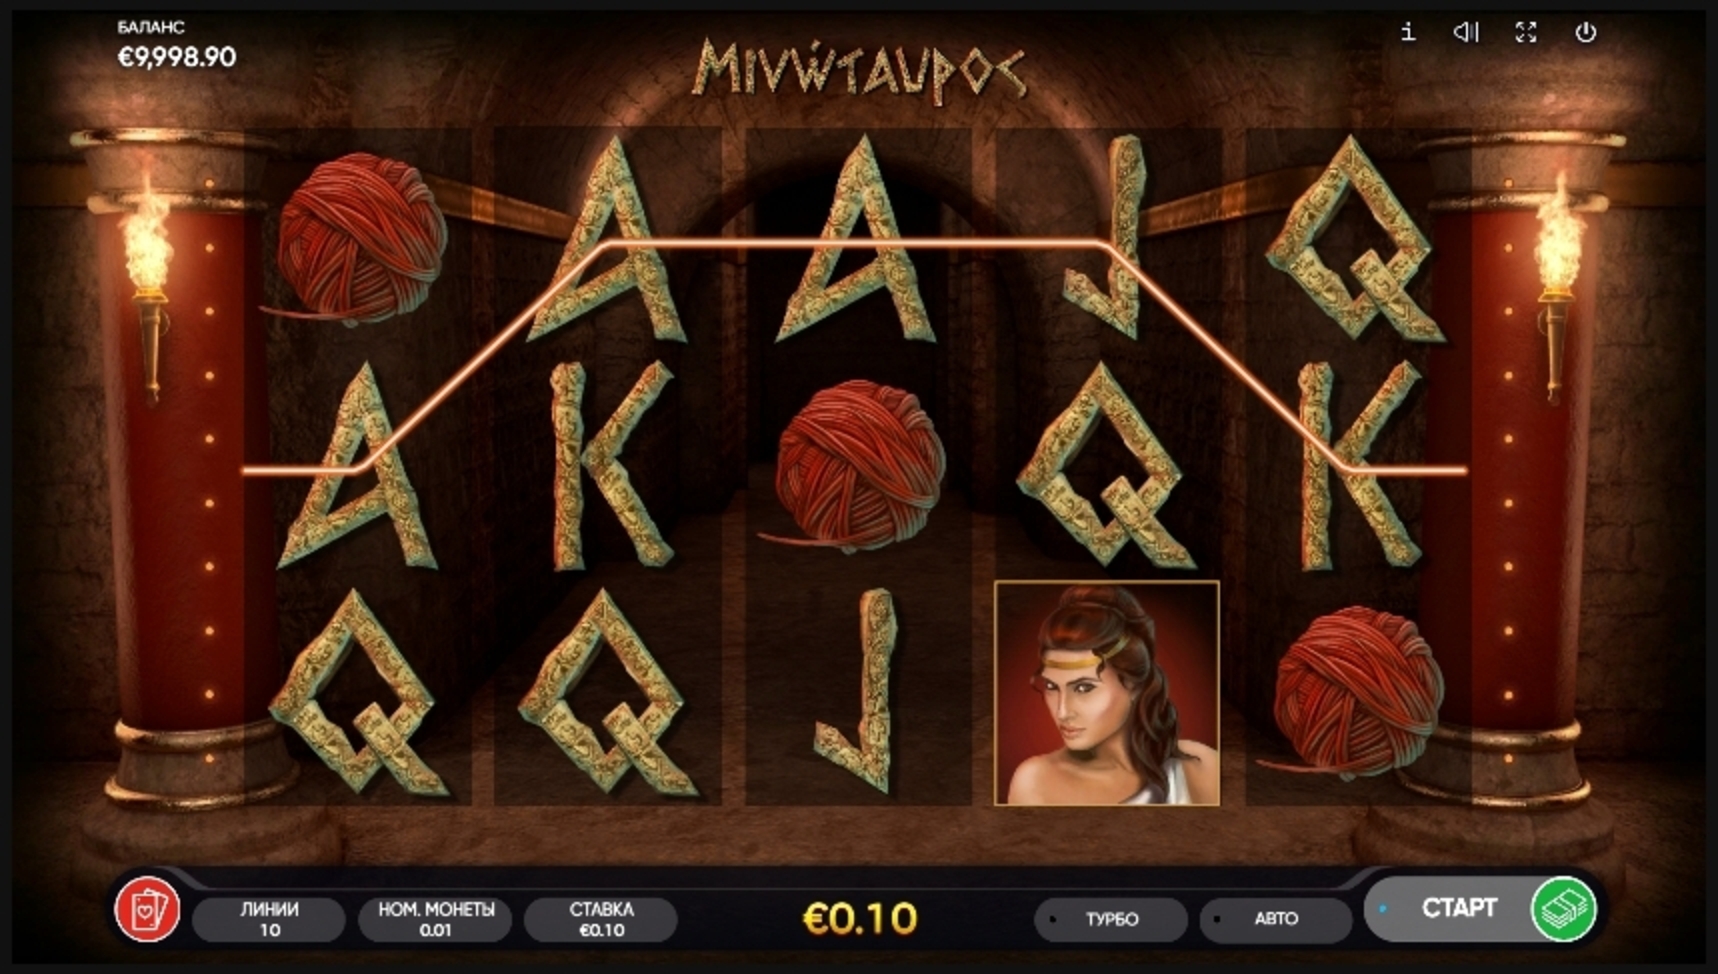 Win Money in Minotaurus Free Slot Game by Endorphina